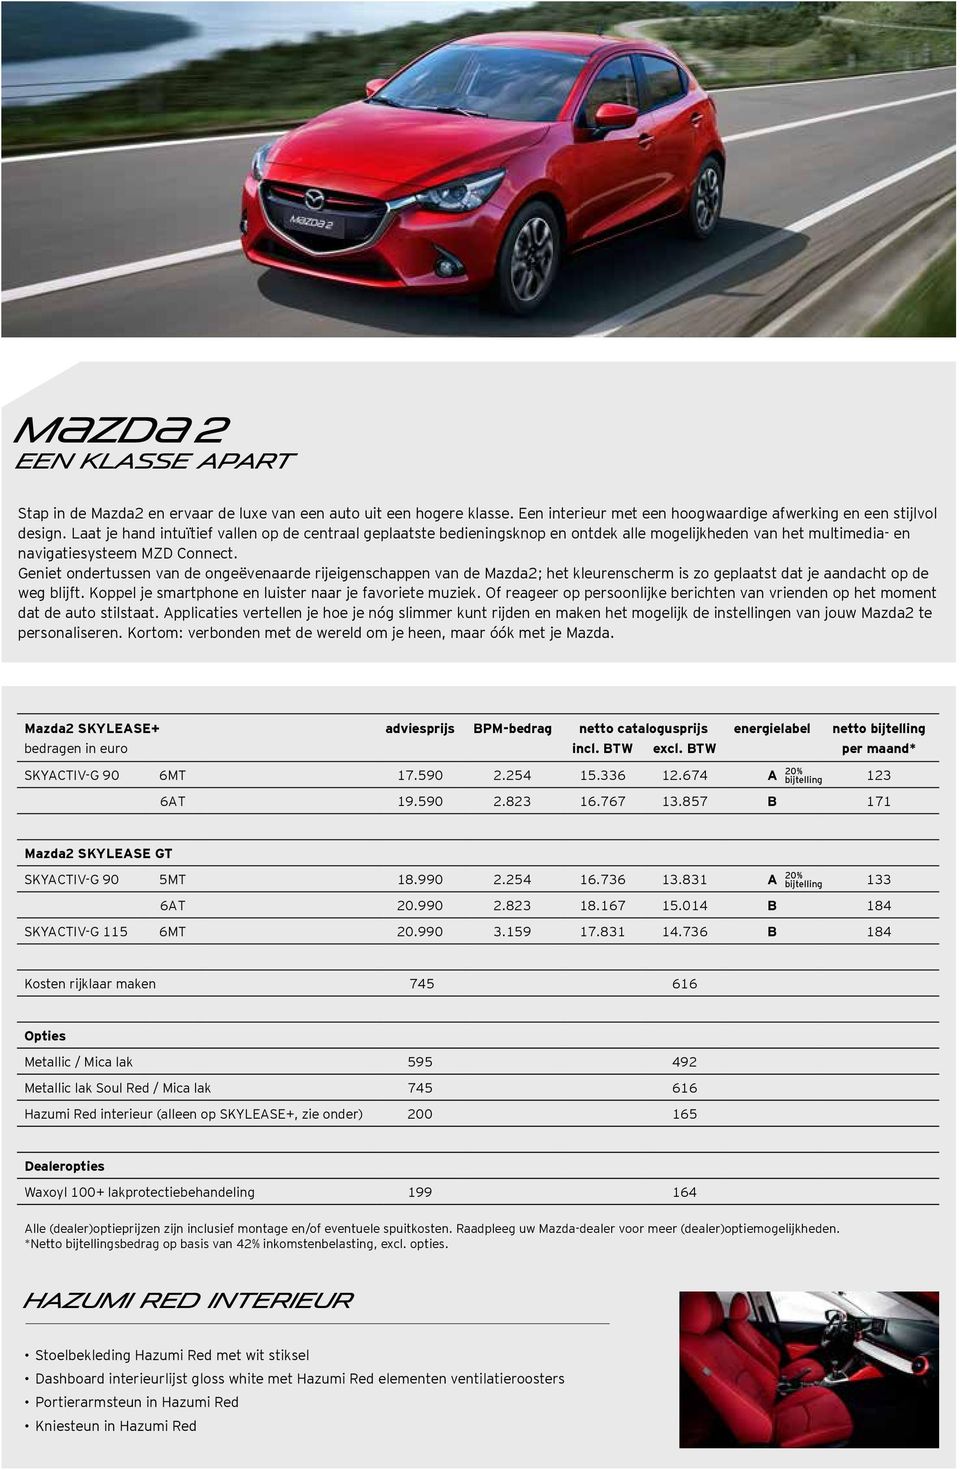 Geniet ondertussen van de ongeëvenaarde rijeigenschappen van de Mazda2; het kleurenscherm is zo geplaatst dat je aandacht op de weg blijft. Koppel je smartphone en luister naar je favoriete muziek.